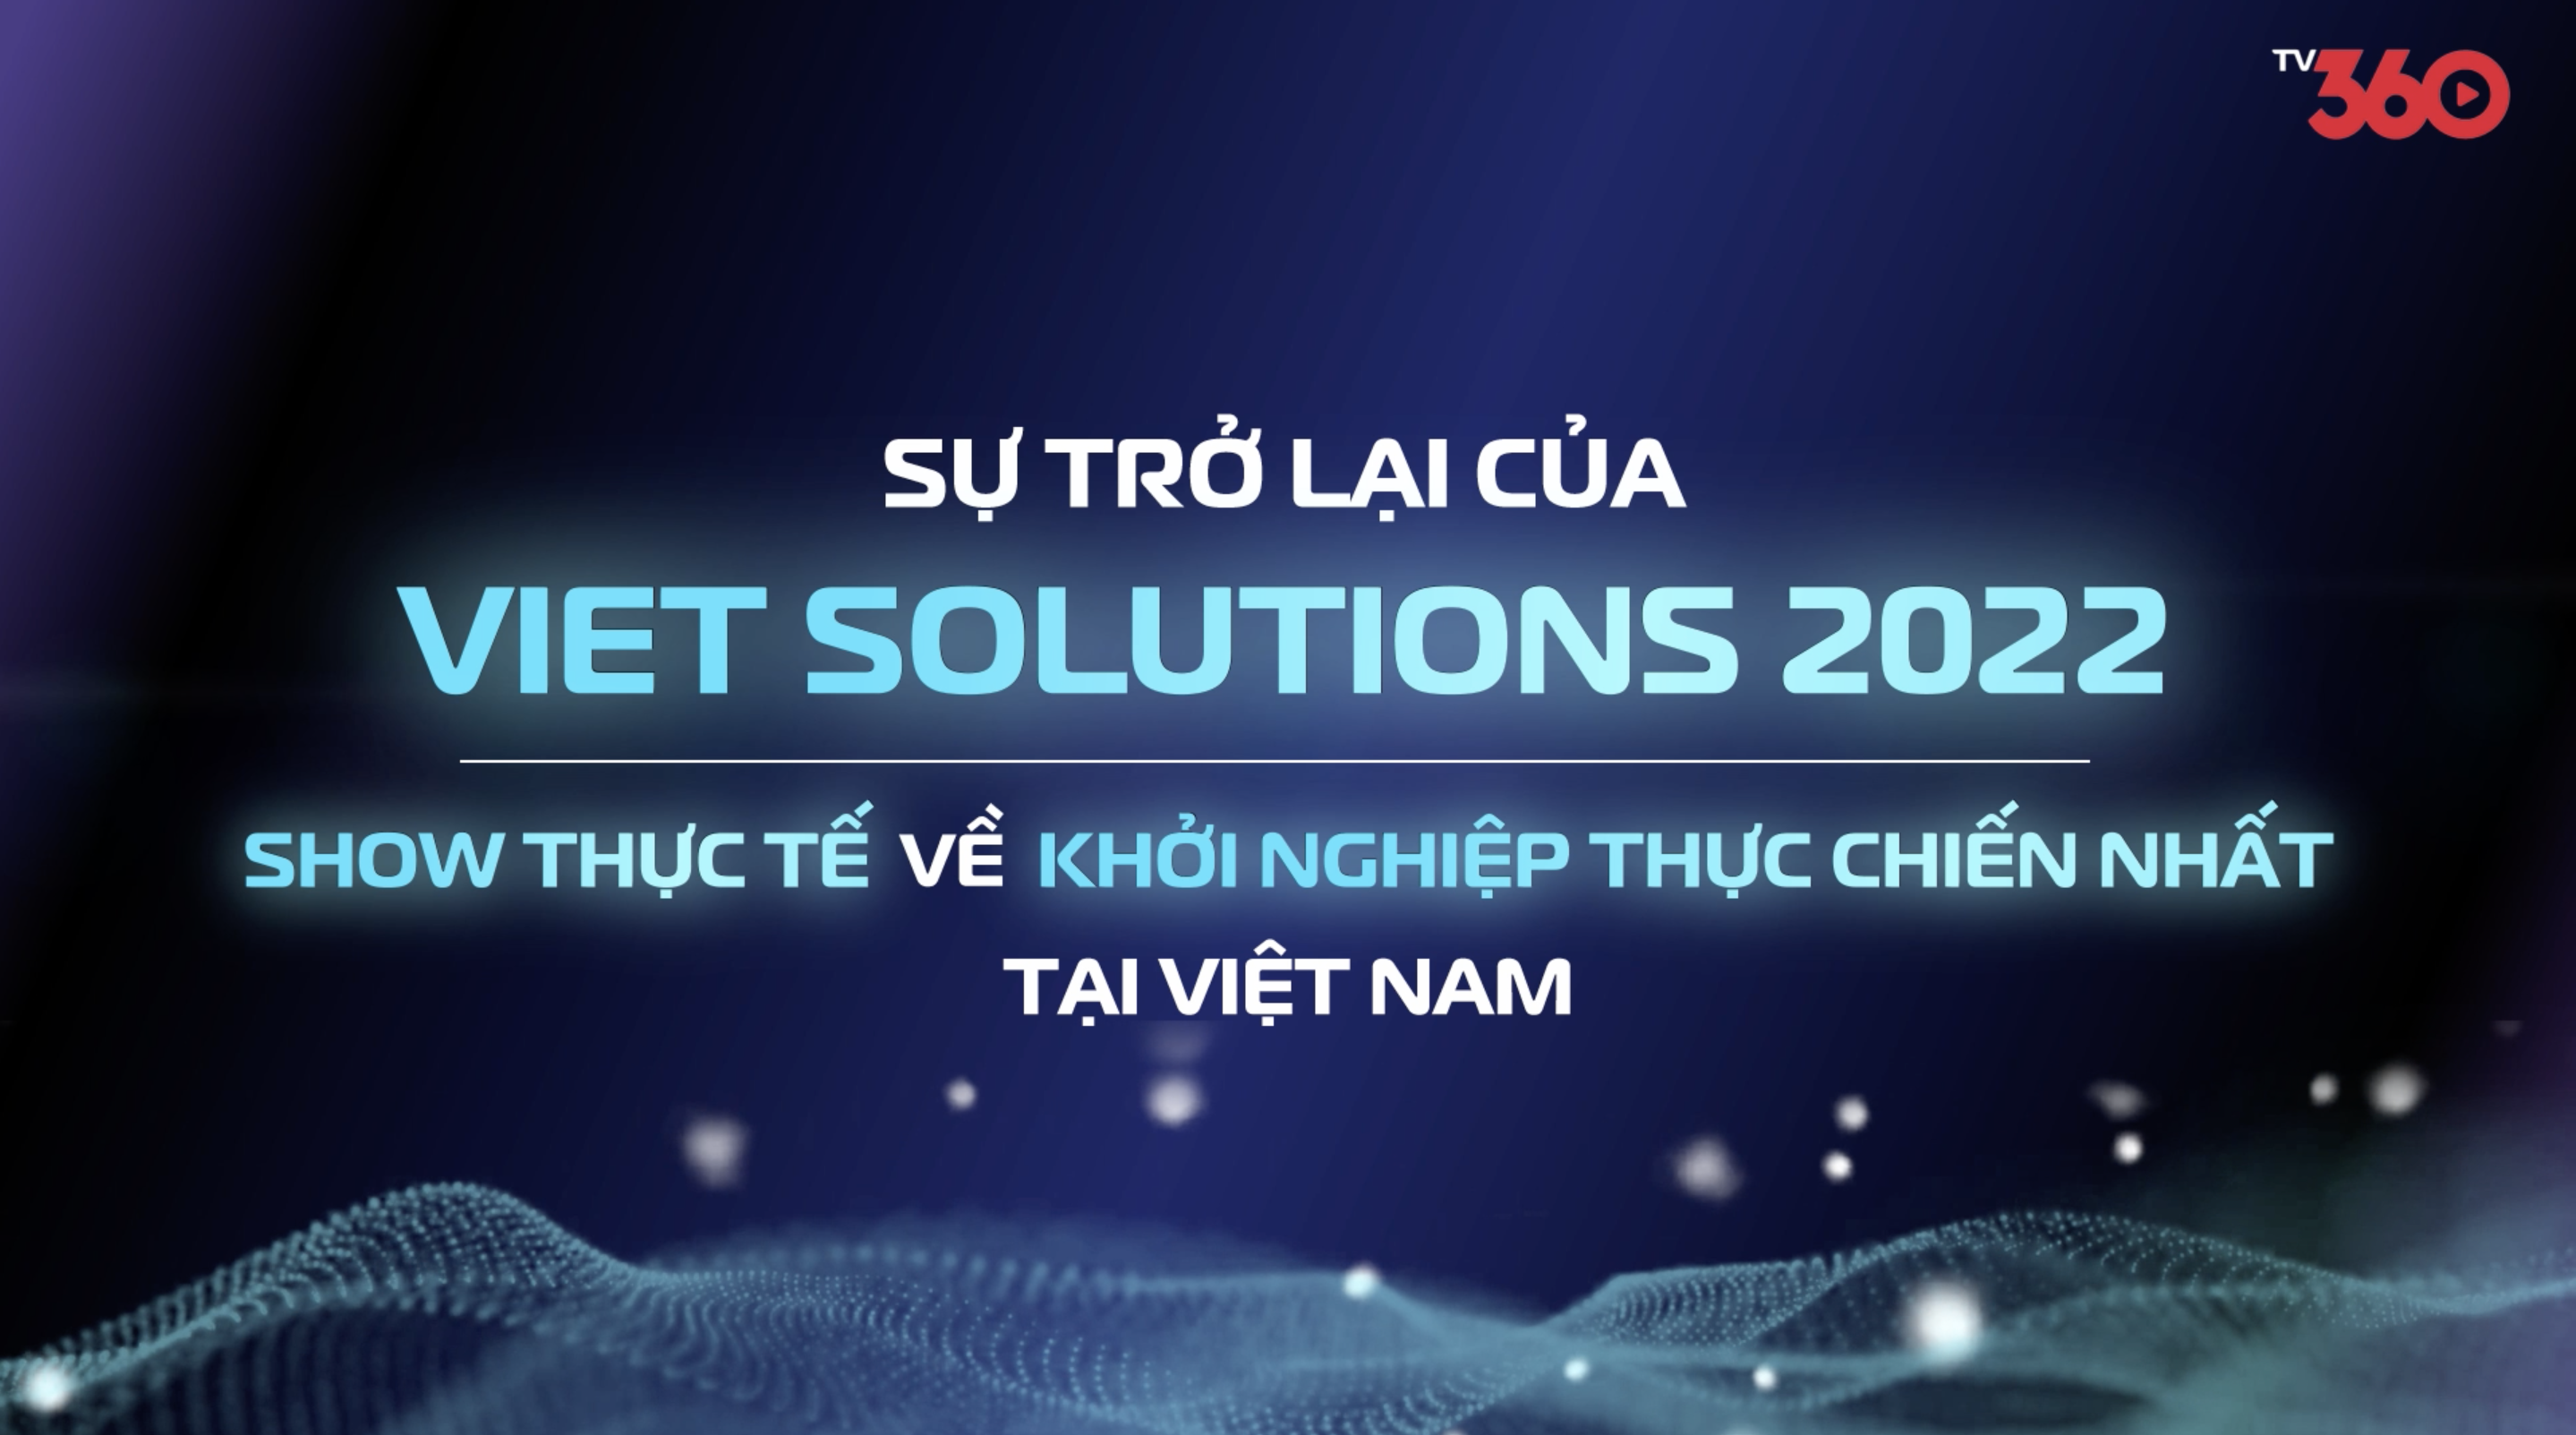 Viet Solutions 2022 - Lần đầu tiên xuất hiện độc quyền trên show thực tế tại TV360